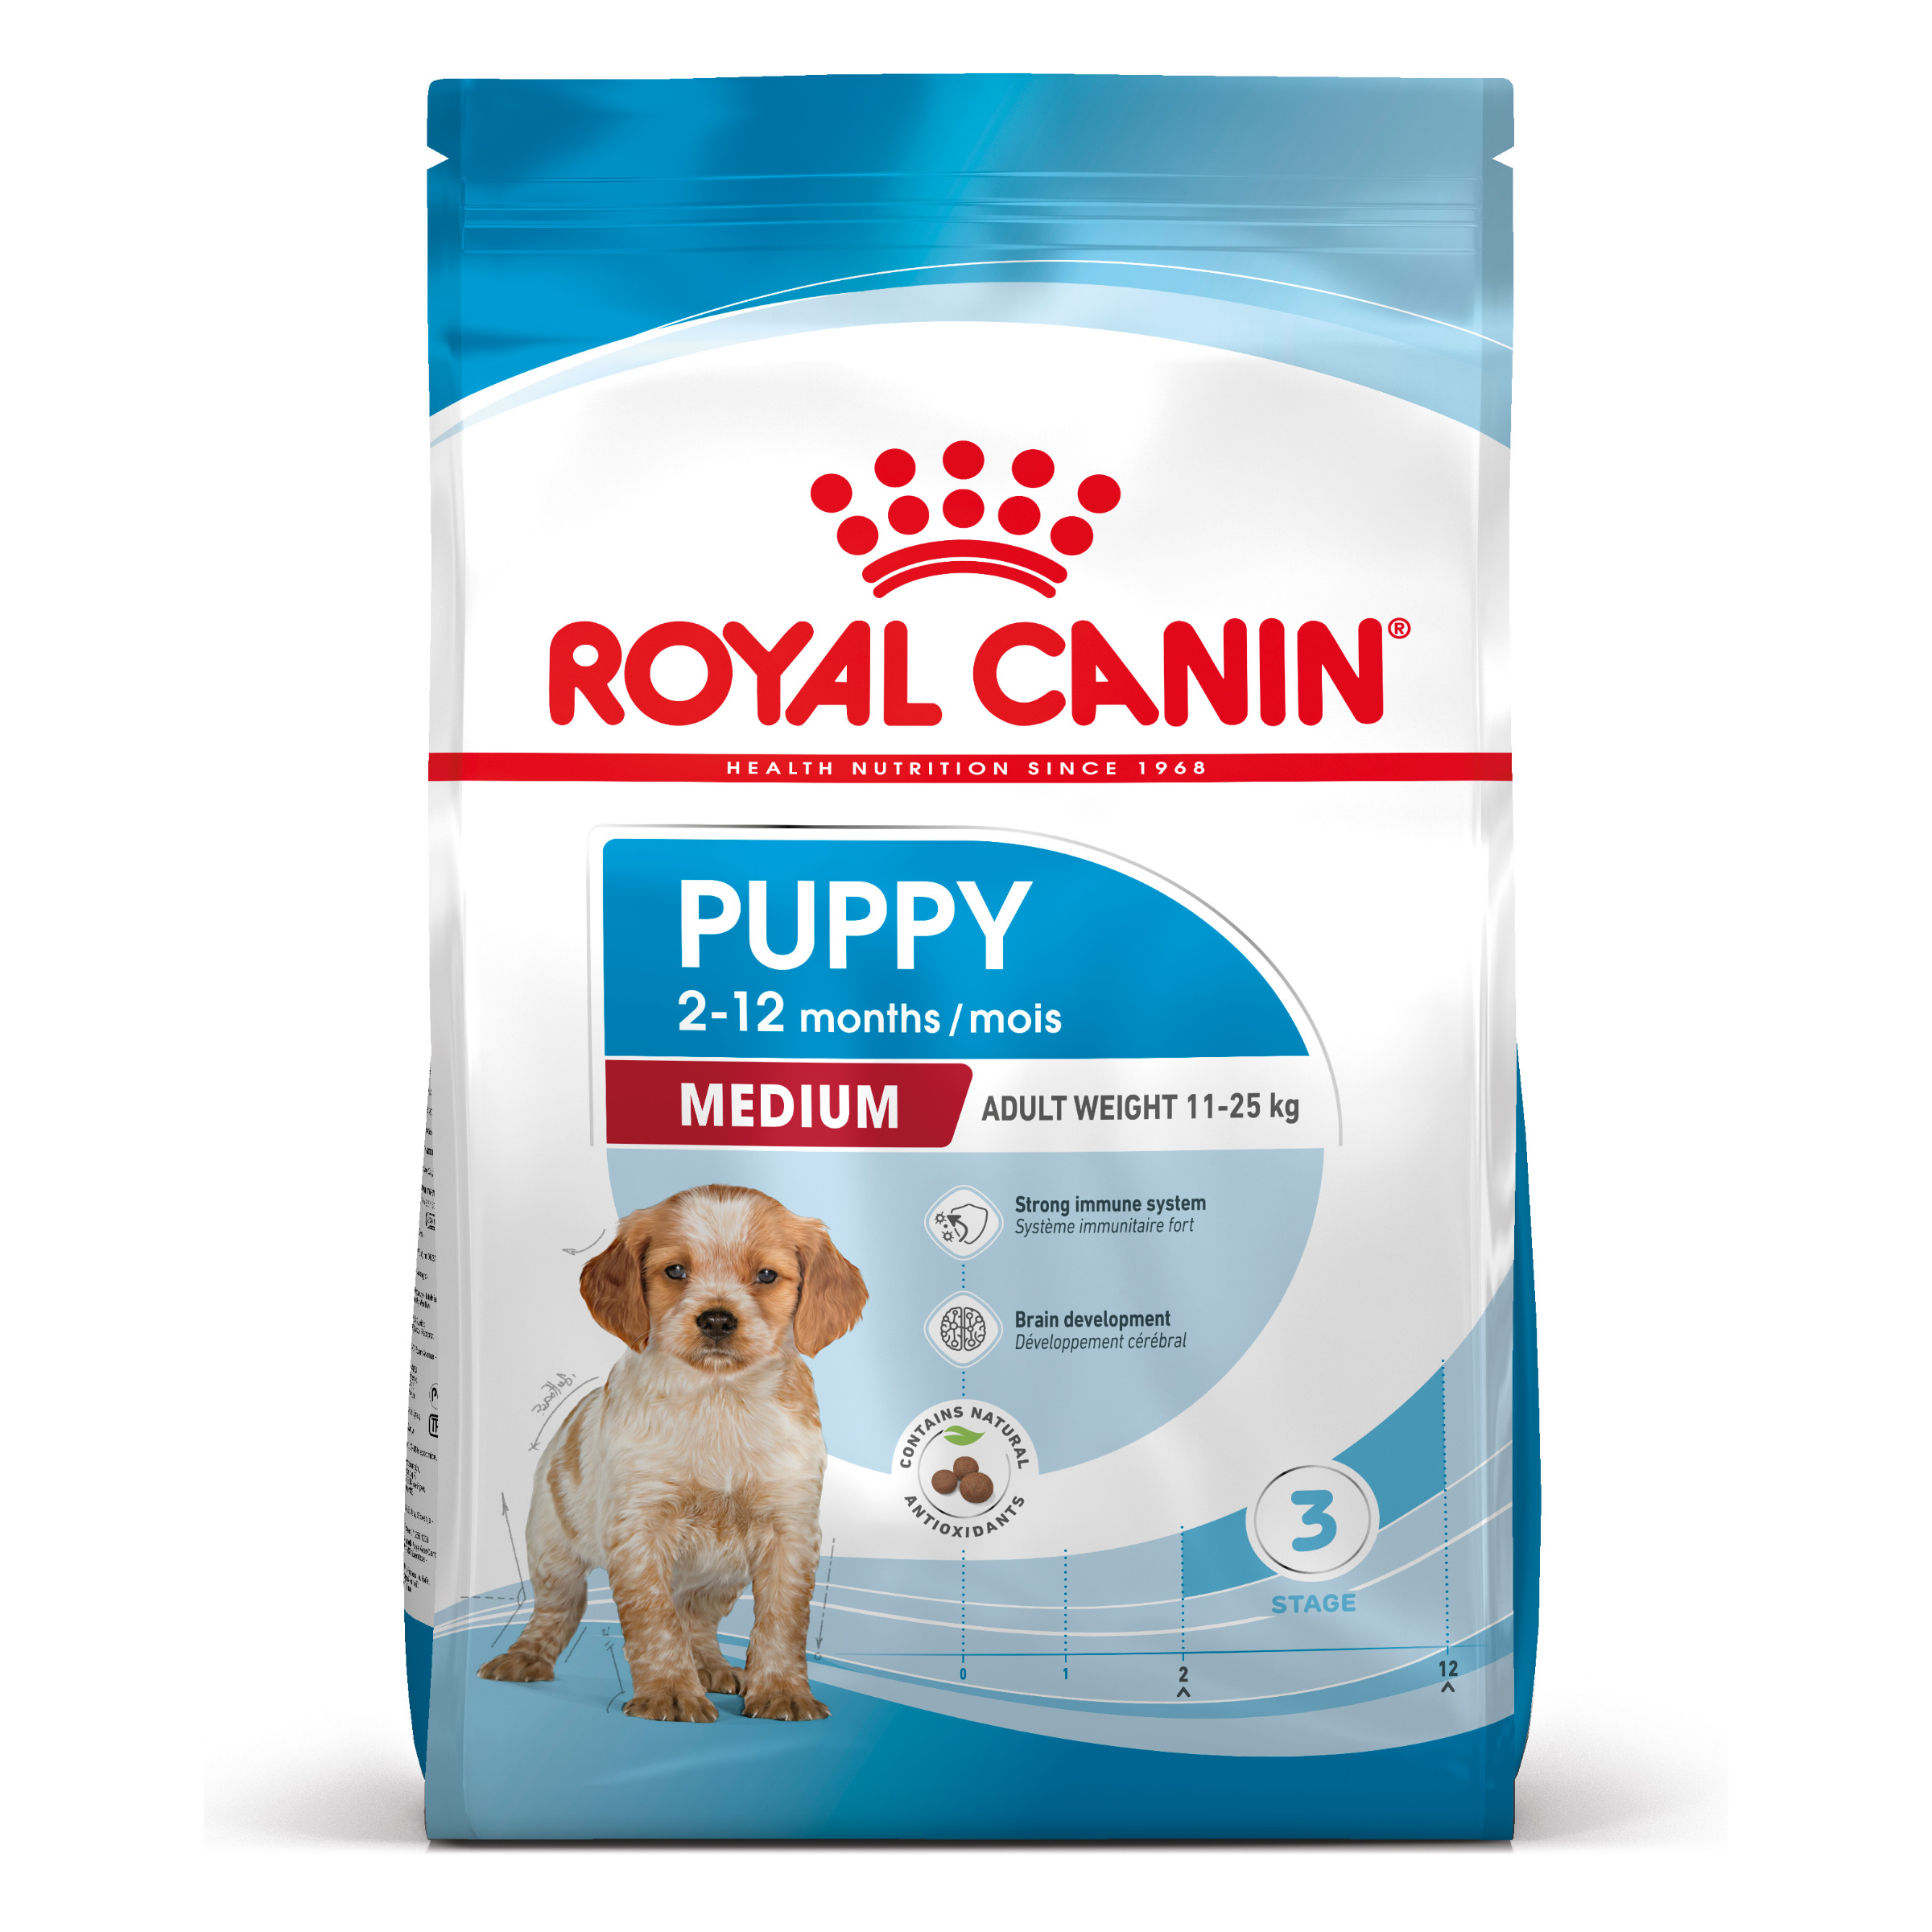 Royal Canin Medium Puppy - Aliment pour chiots de races moyennes (poids adulte de 11 à 25 kg) -Jusqu’à 12 mois - 4kg